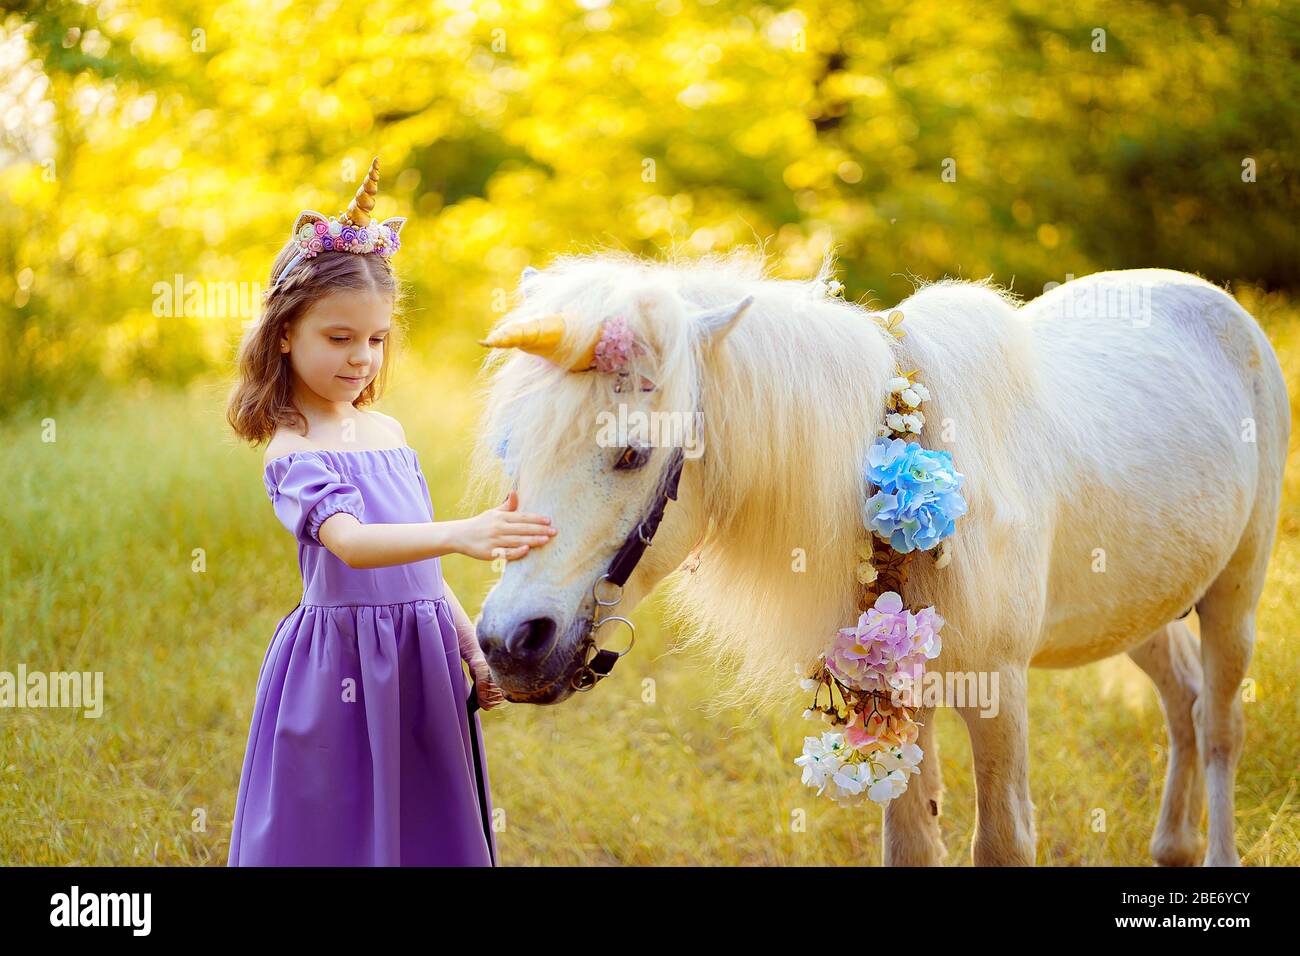 Fille en robe violette avec couronne d'une licorne dans les cheveux embrassant le cheval blanc unicorn. Les rêves deviennent réalité. Conte de fées. Banque D'Images